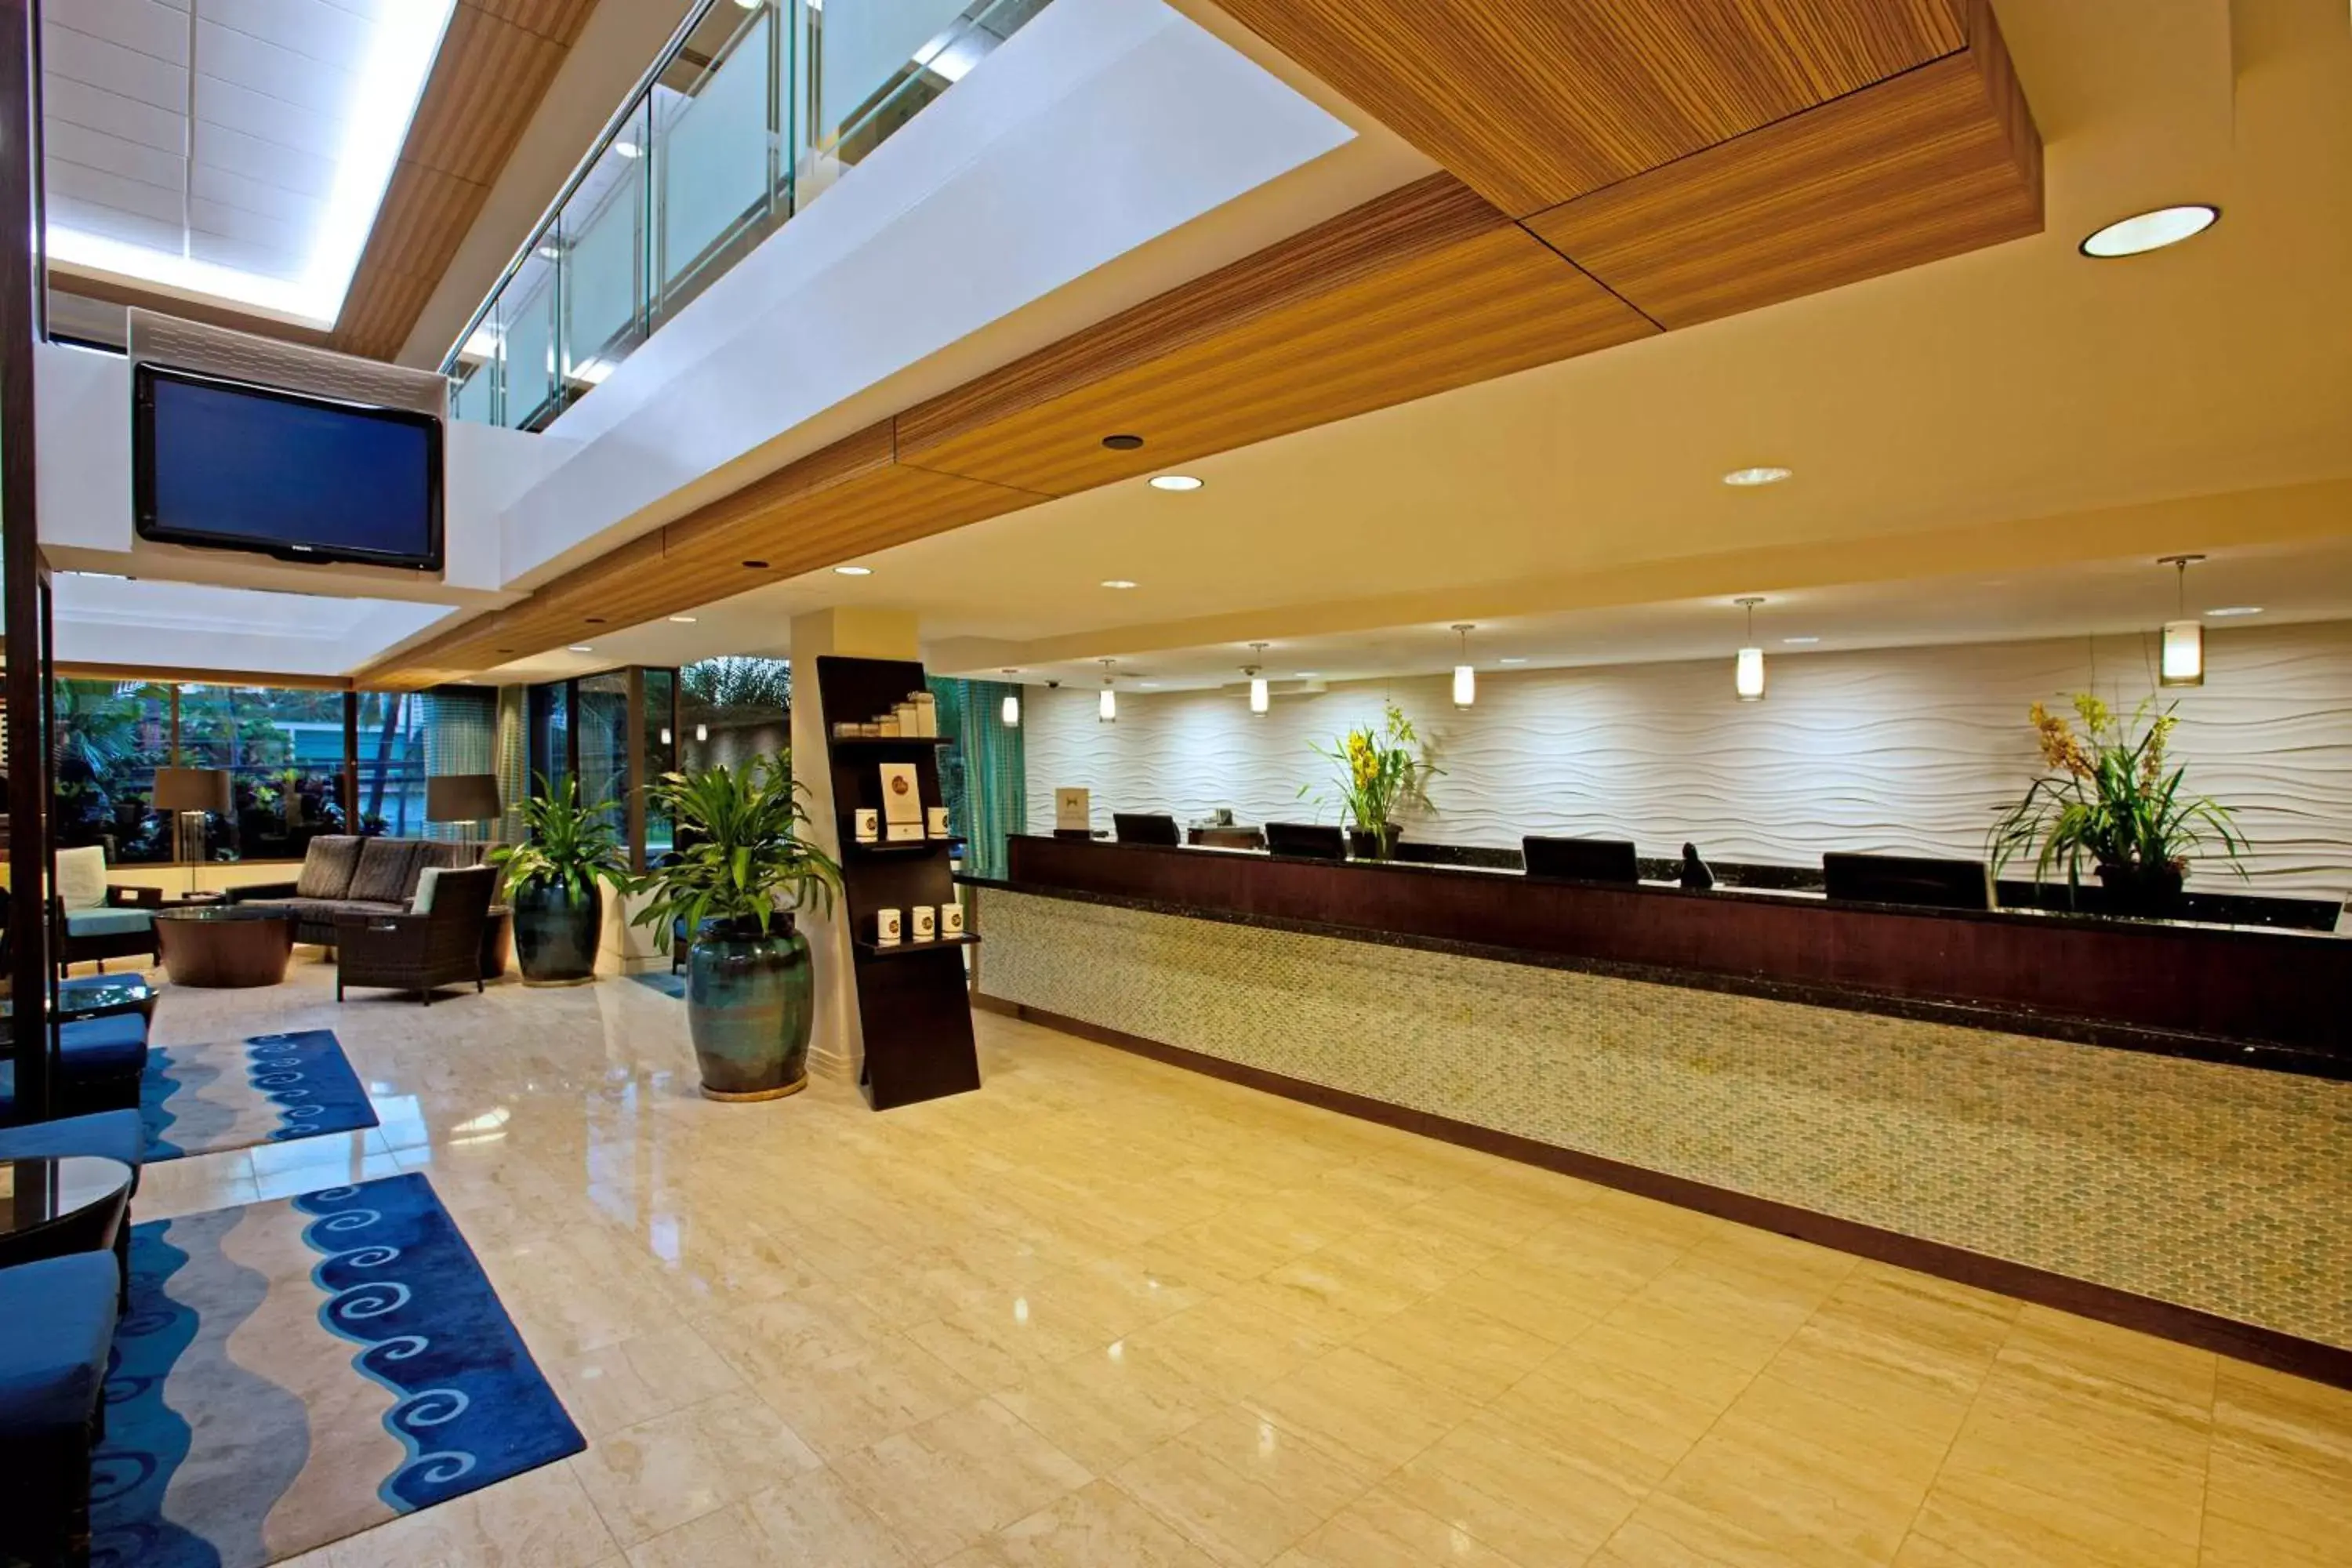 Lobby or reception, Lobby/Reception in DoubleTree by Hilton Alana - Waikiki Beach